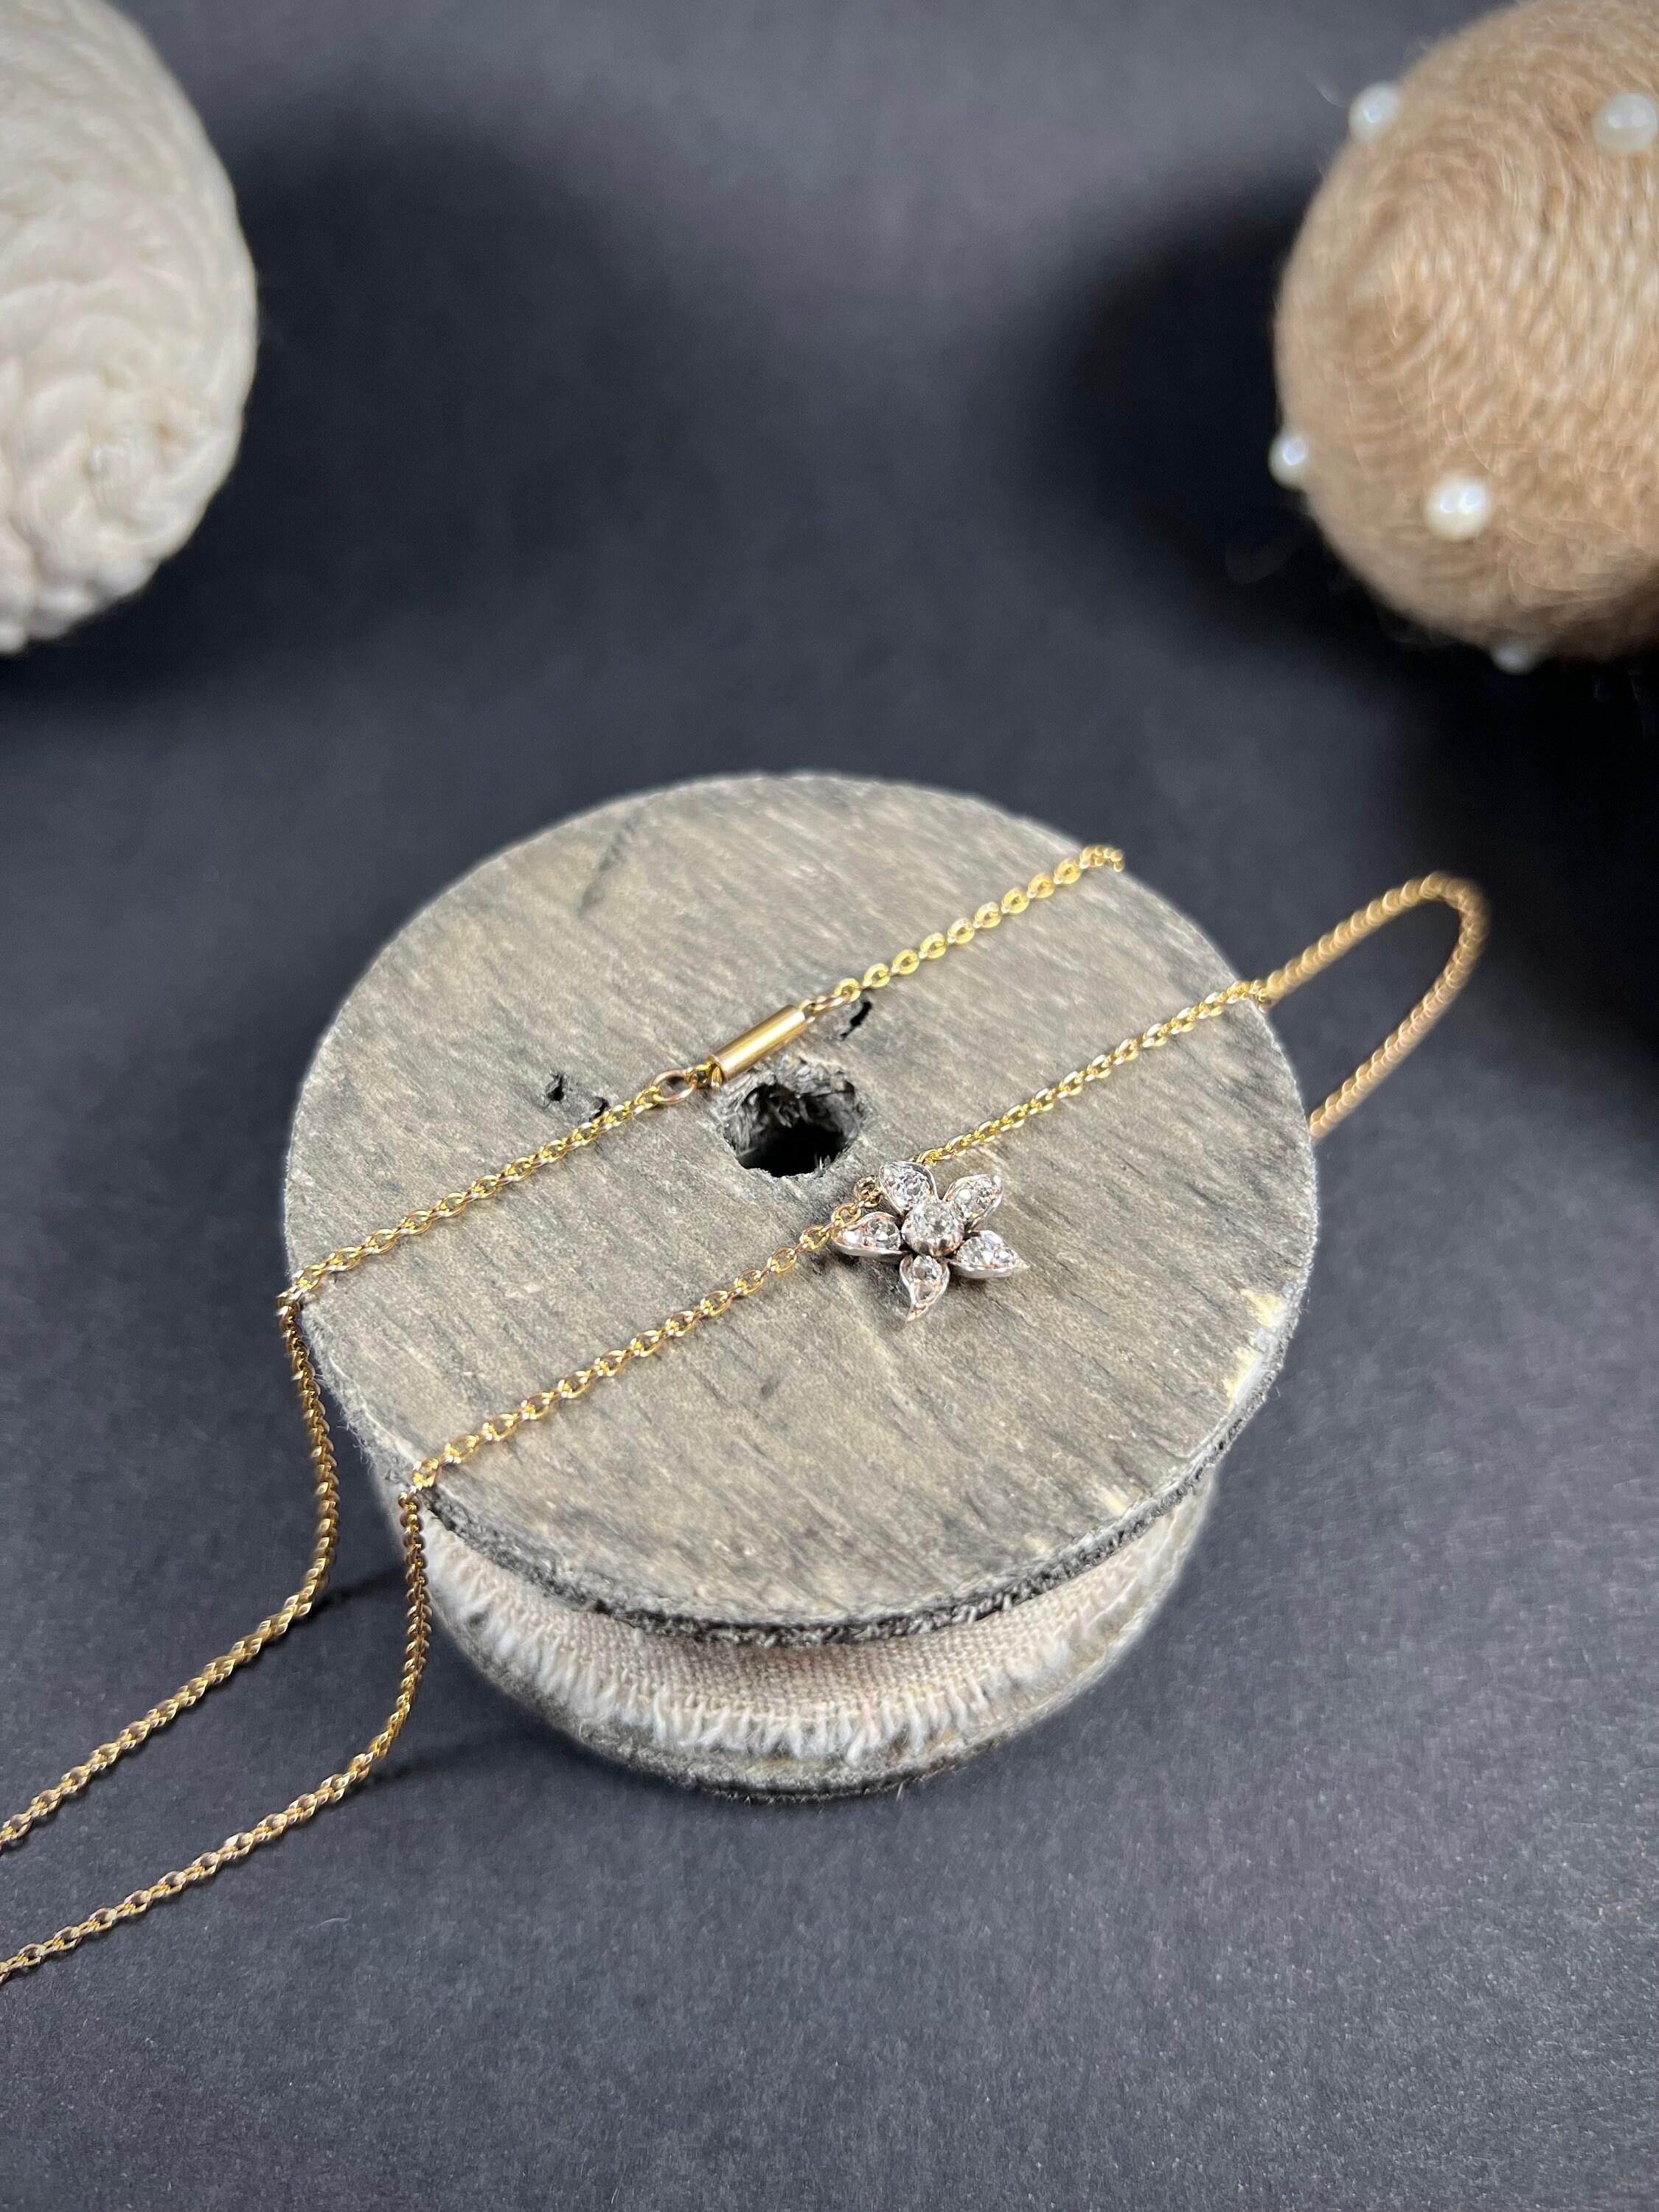 Antique 18ct Gold Victorian Diamond Flower Pendant Necklace For Sale 1